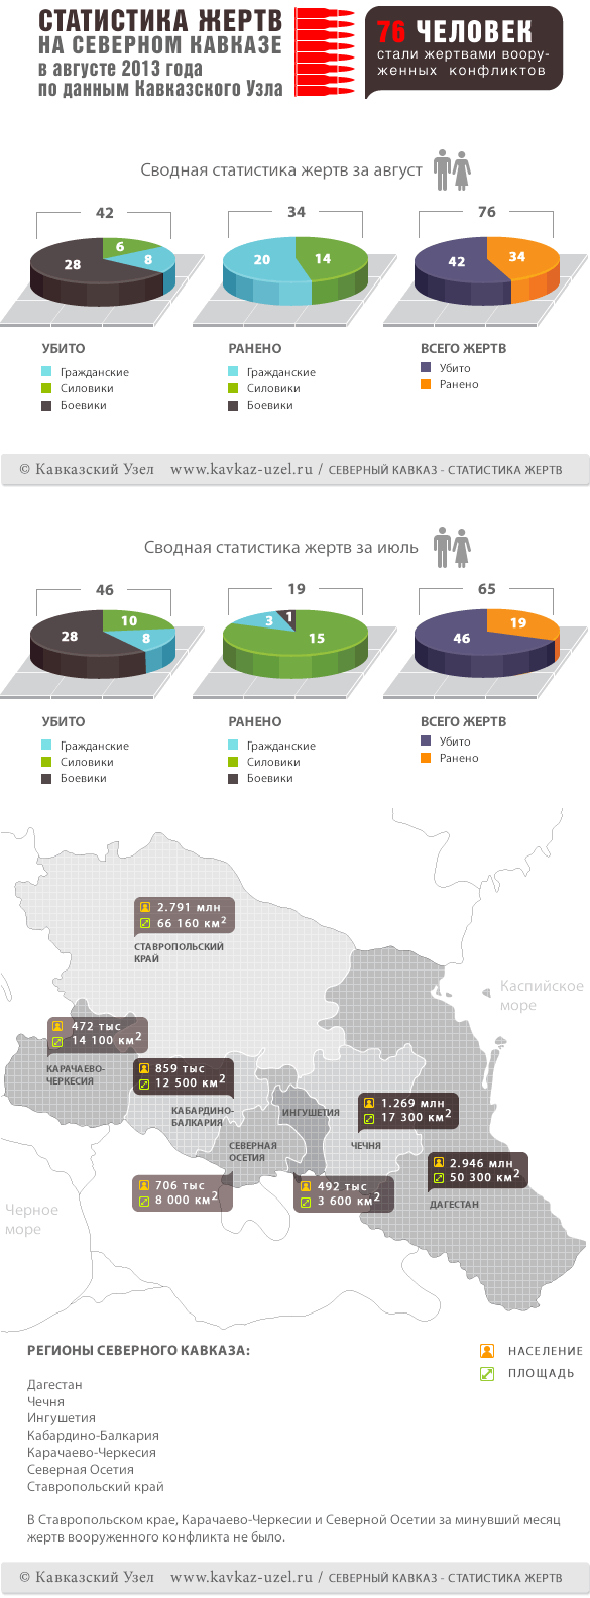 Инфографика. Статистика жертв на Северном Кавказе в августе 2013 года по данным Кавказского узла